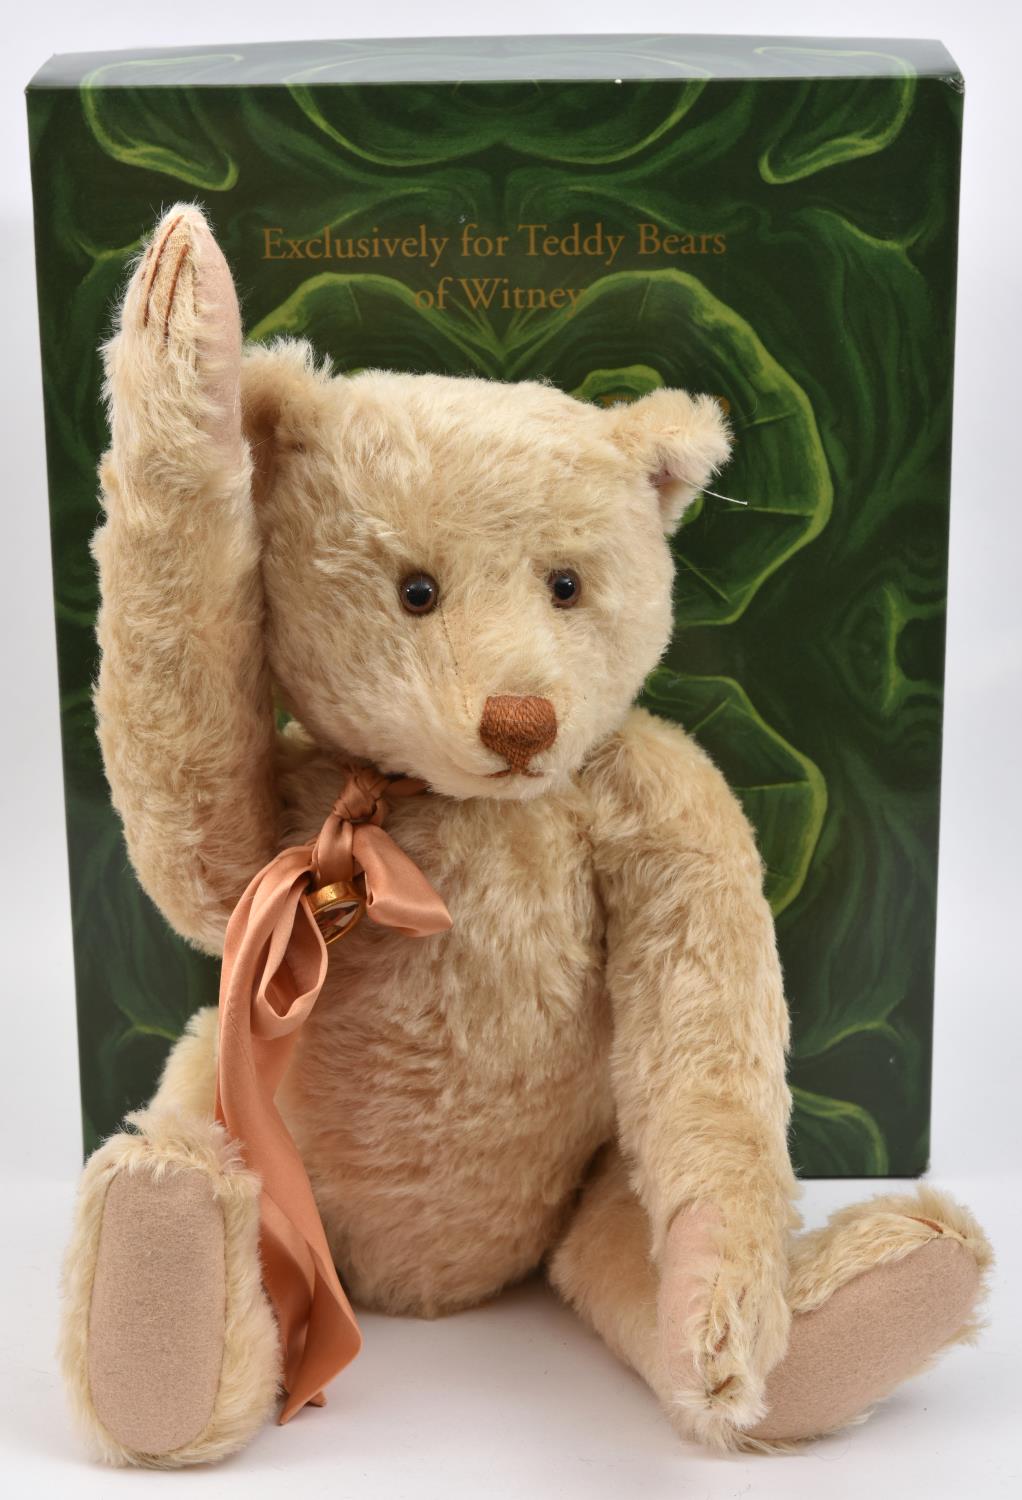 3 Steiff. A 2001-2002 Limited Edition 1/1500 Collector's Bear for 'Teddy Bears Of Witney' - Teddy